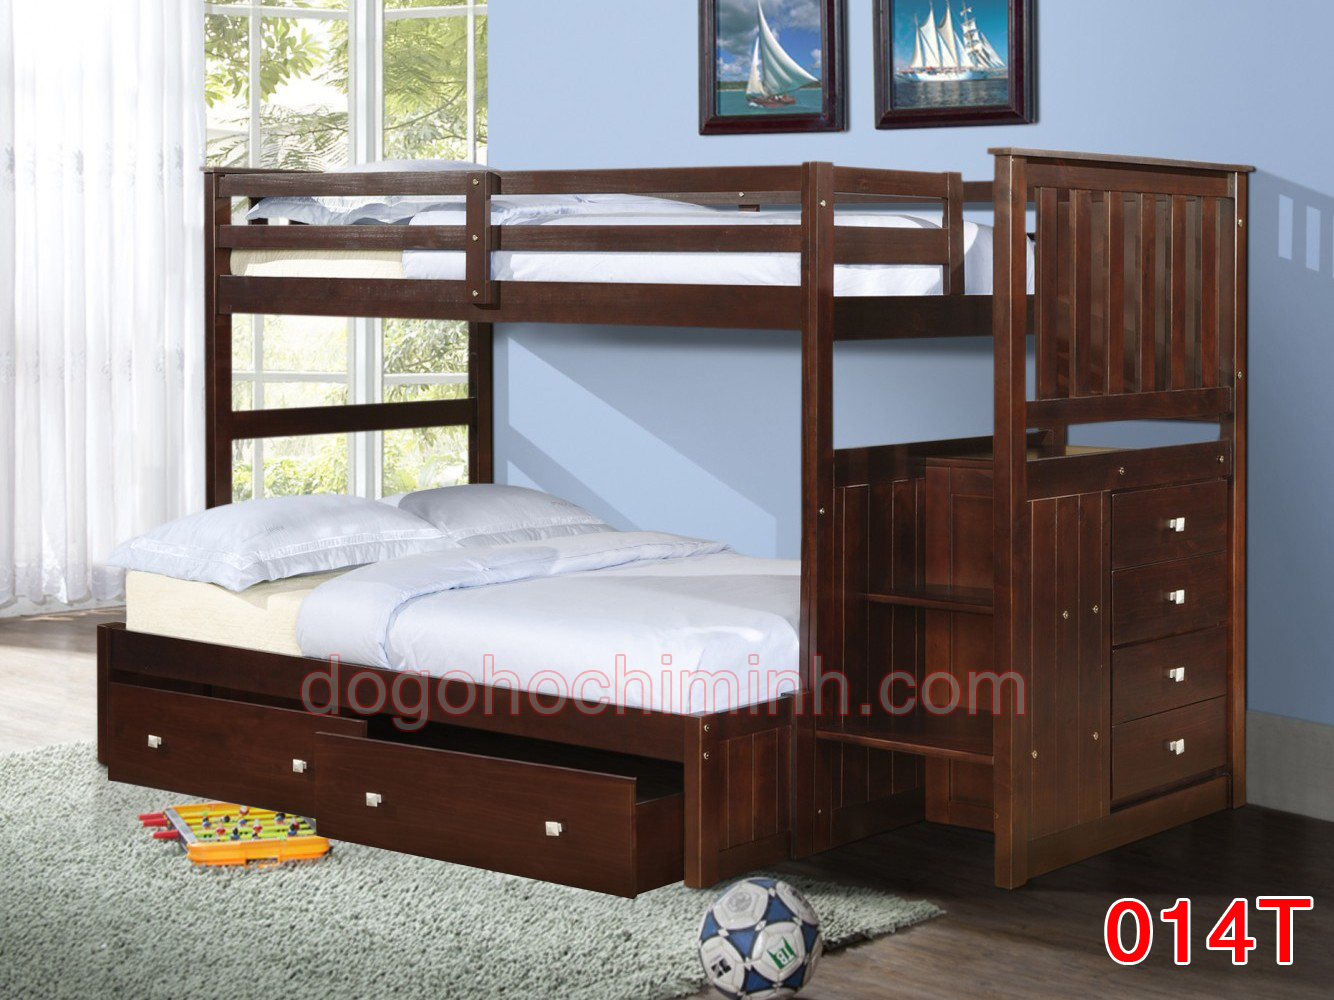 Giường tầng trẻ em bằng gỗ K.Bed 014T